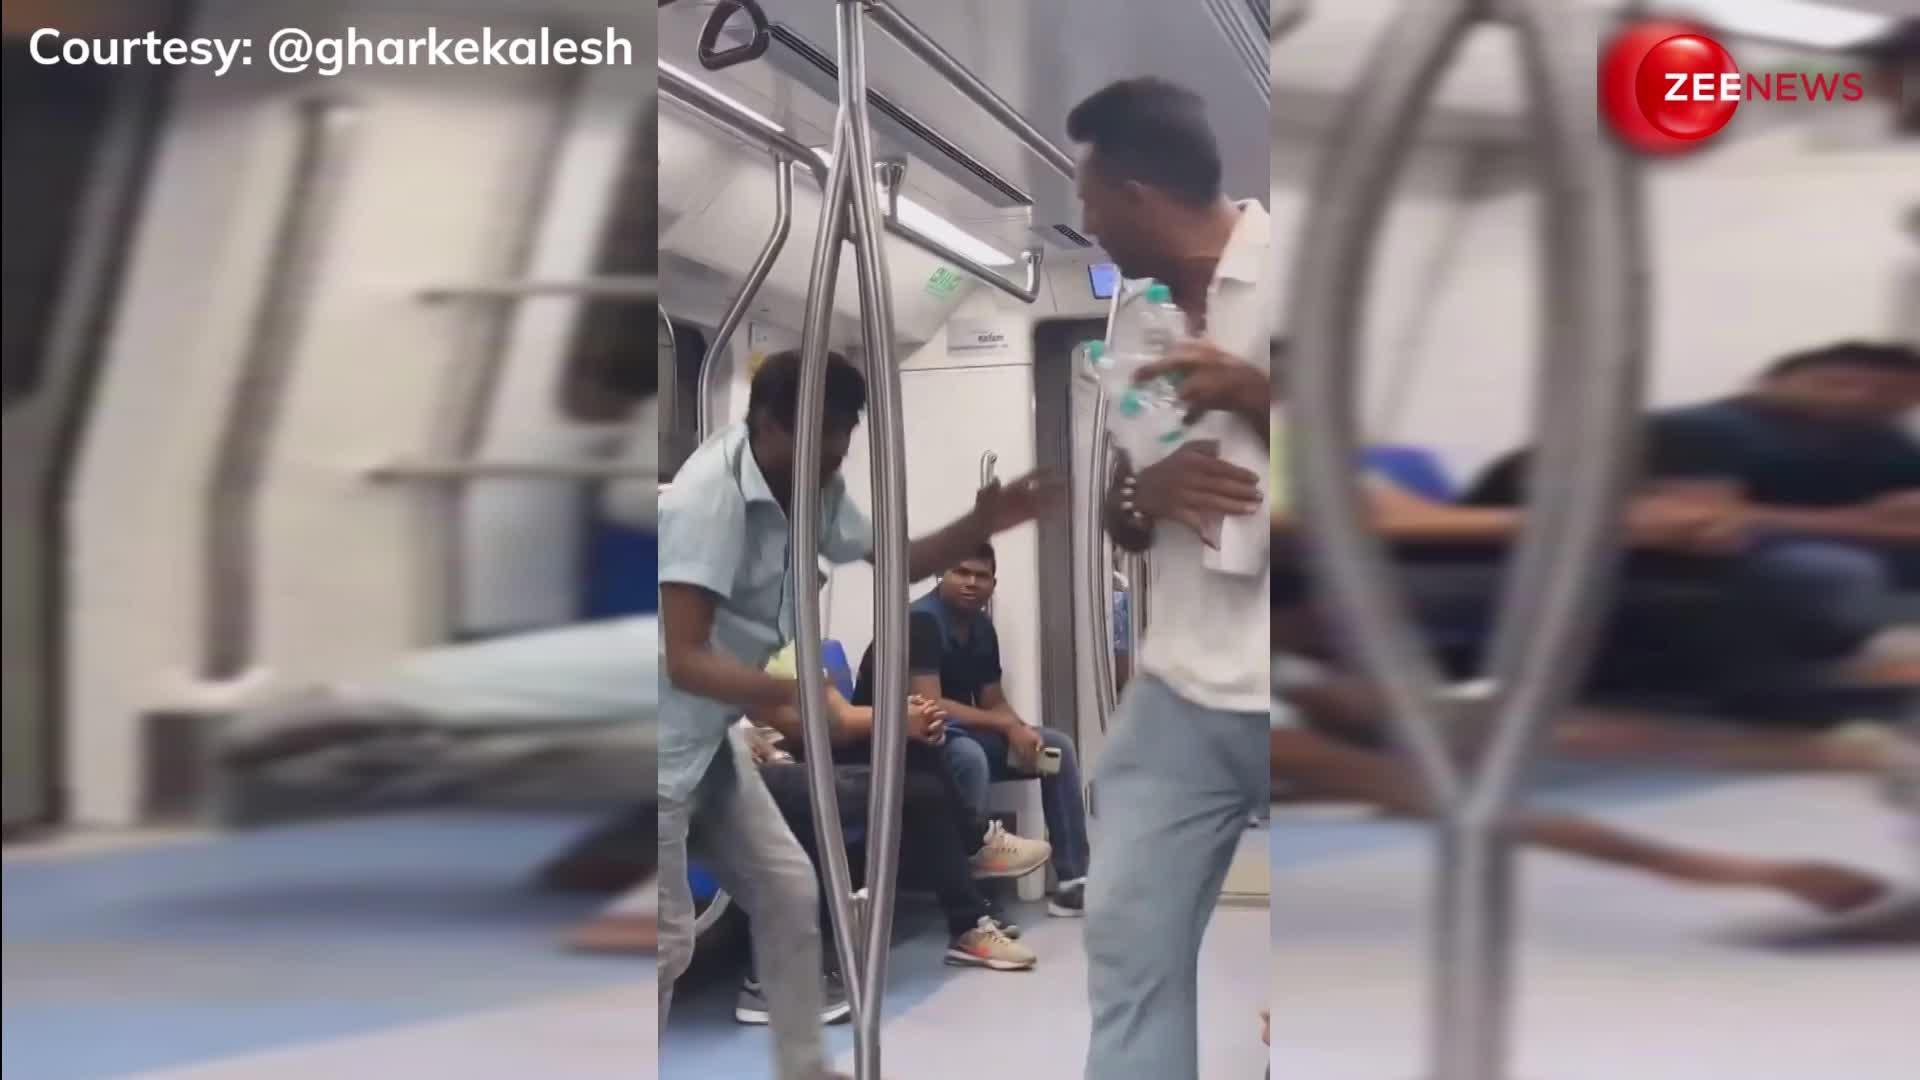 दिल्ली मेट्रो में चप्पल vs थप्पड़! शख्स ने गाल पर मारी चप्पल, फिर खाया झापड़, वीडियो देख लोग बोले 'हकीकत में बहुत मजा आया'